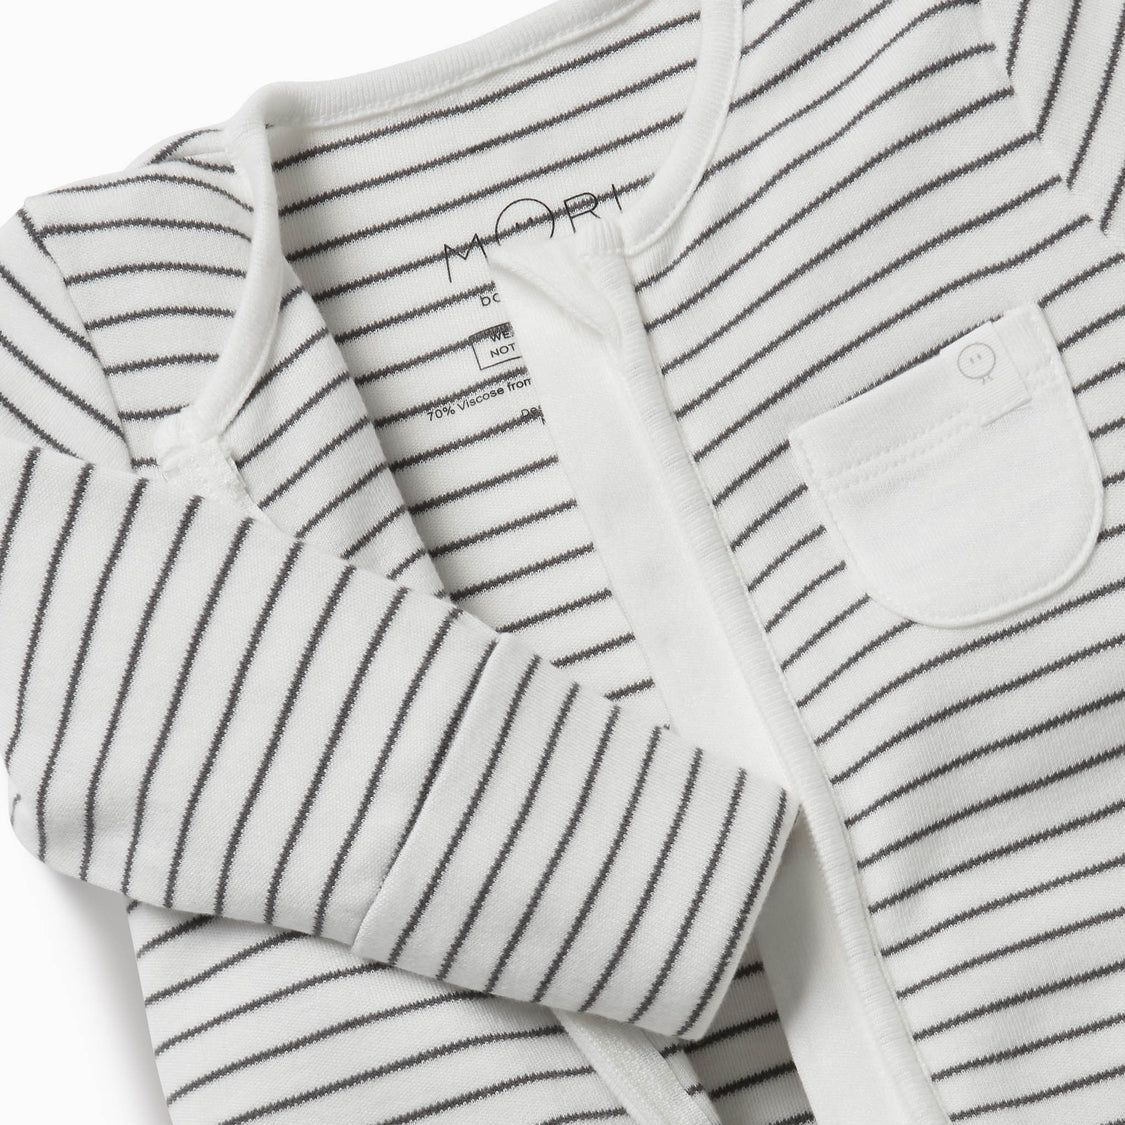 Clever Zip Sleepsuit | Baby Mori